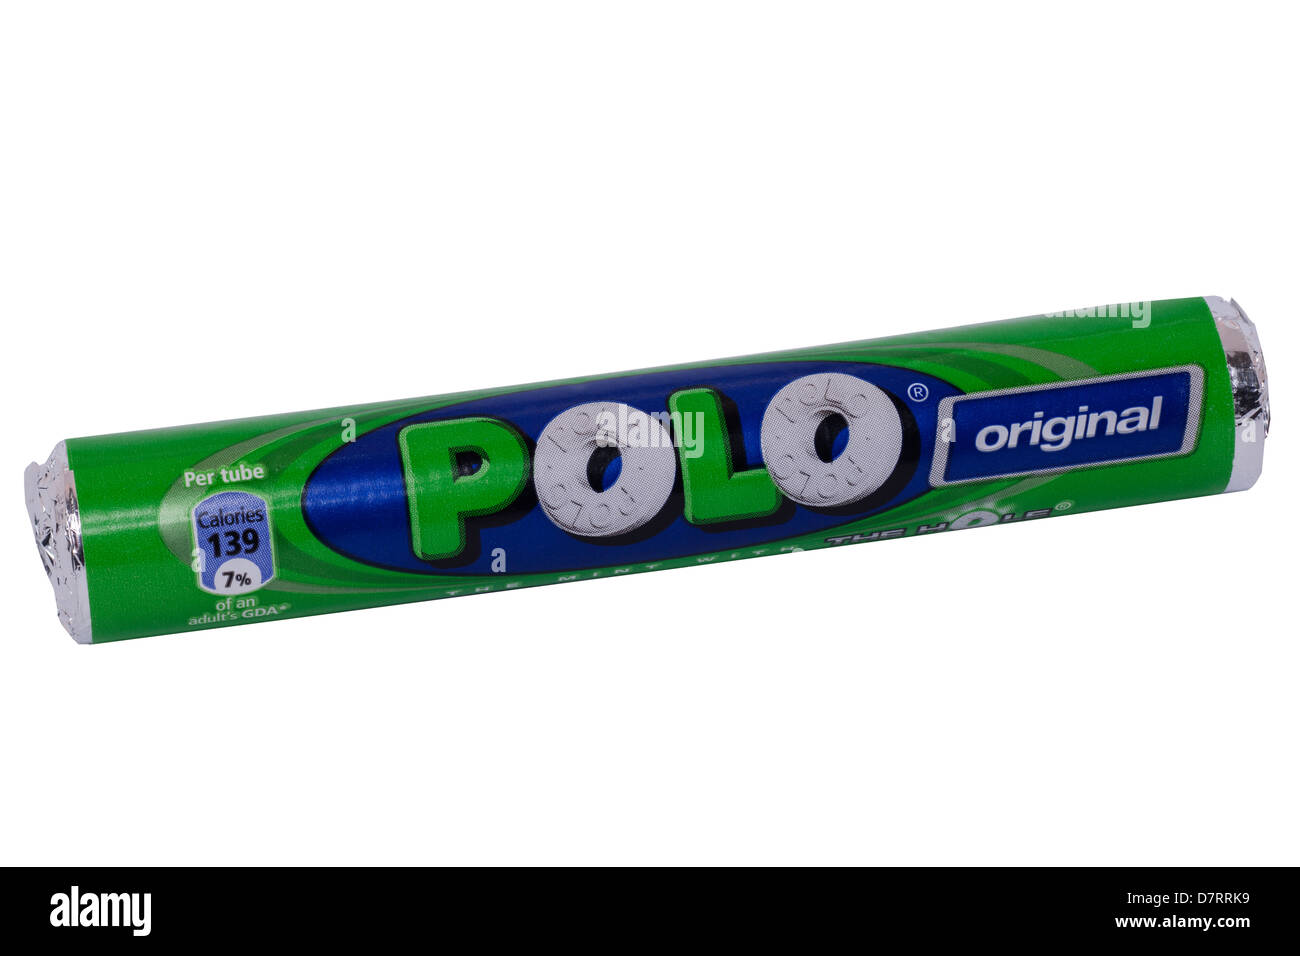 Un paquet de bonbons menthe original Polo sur fond blanc Photo Stock - Alamy